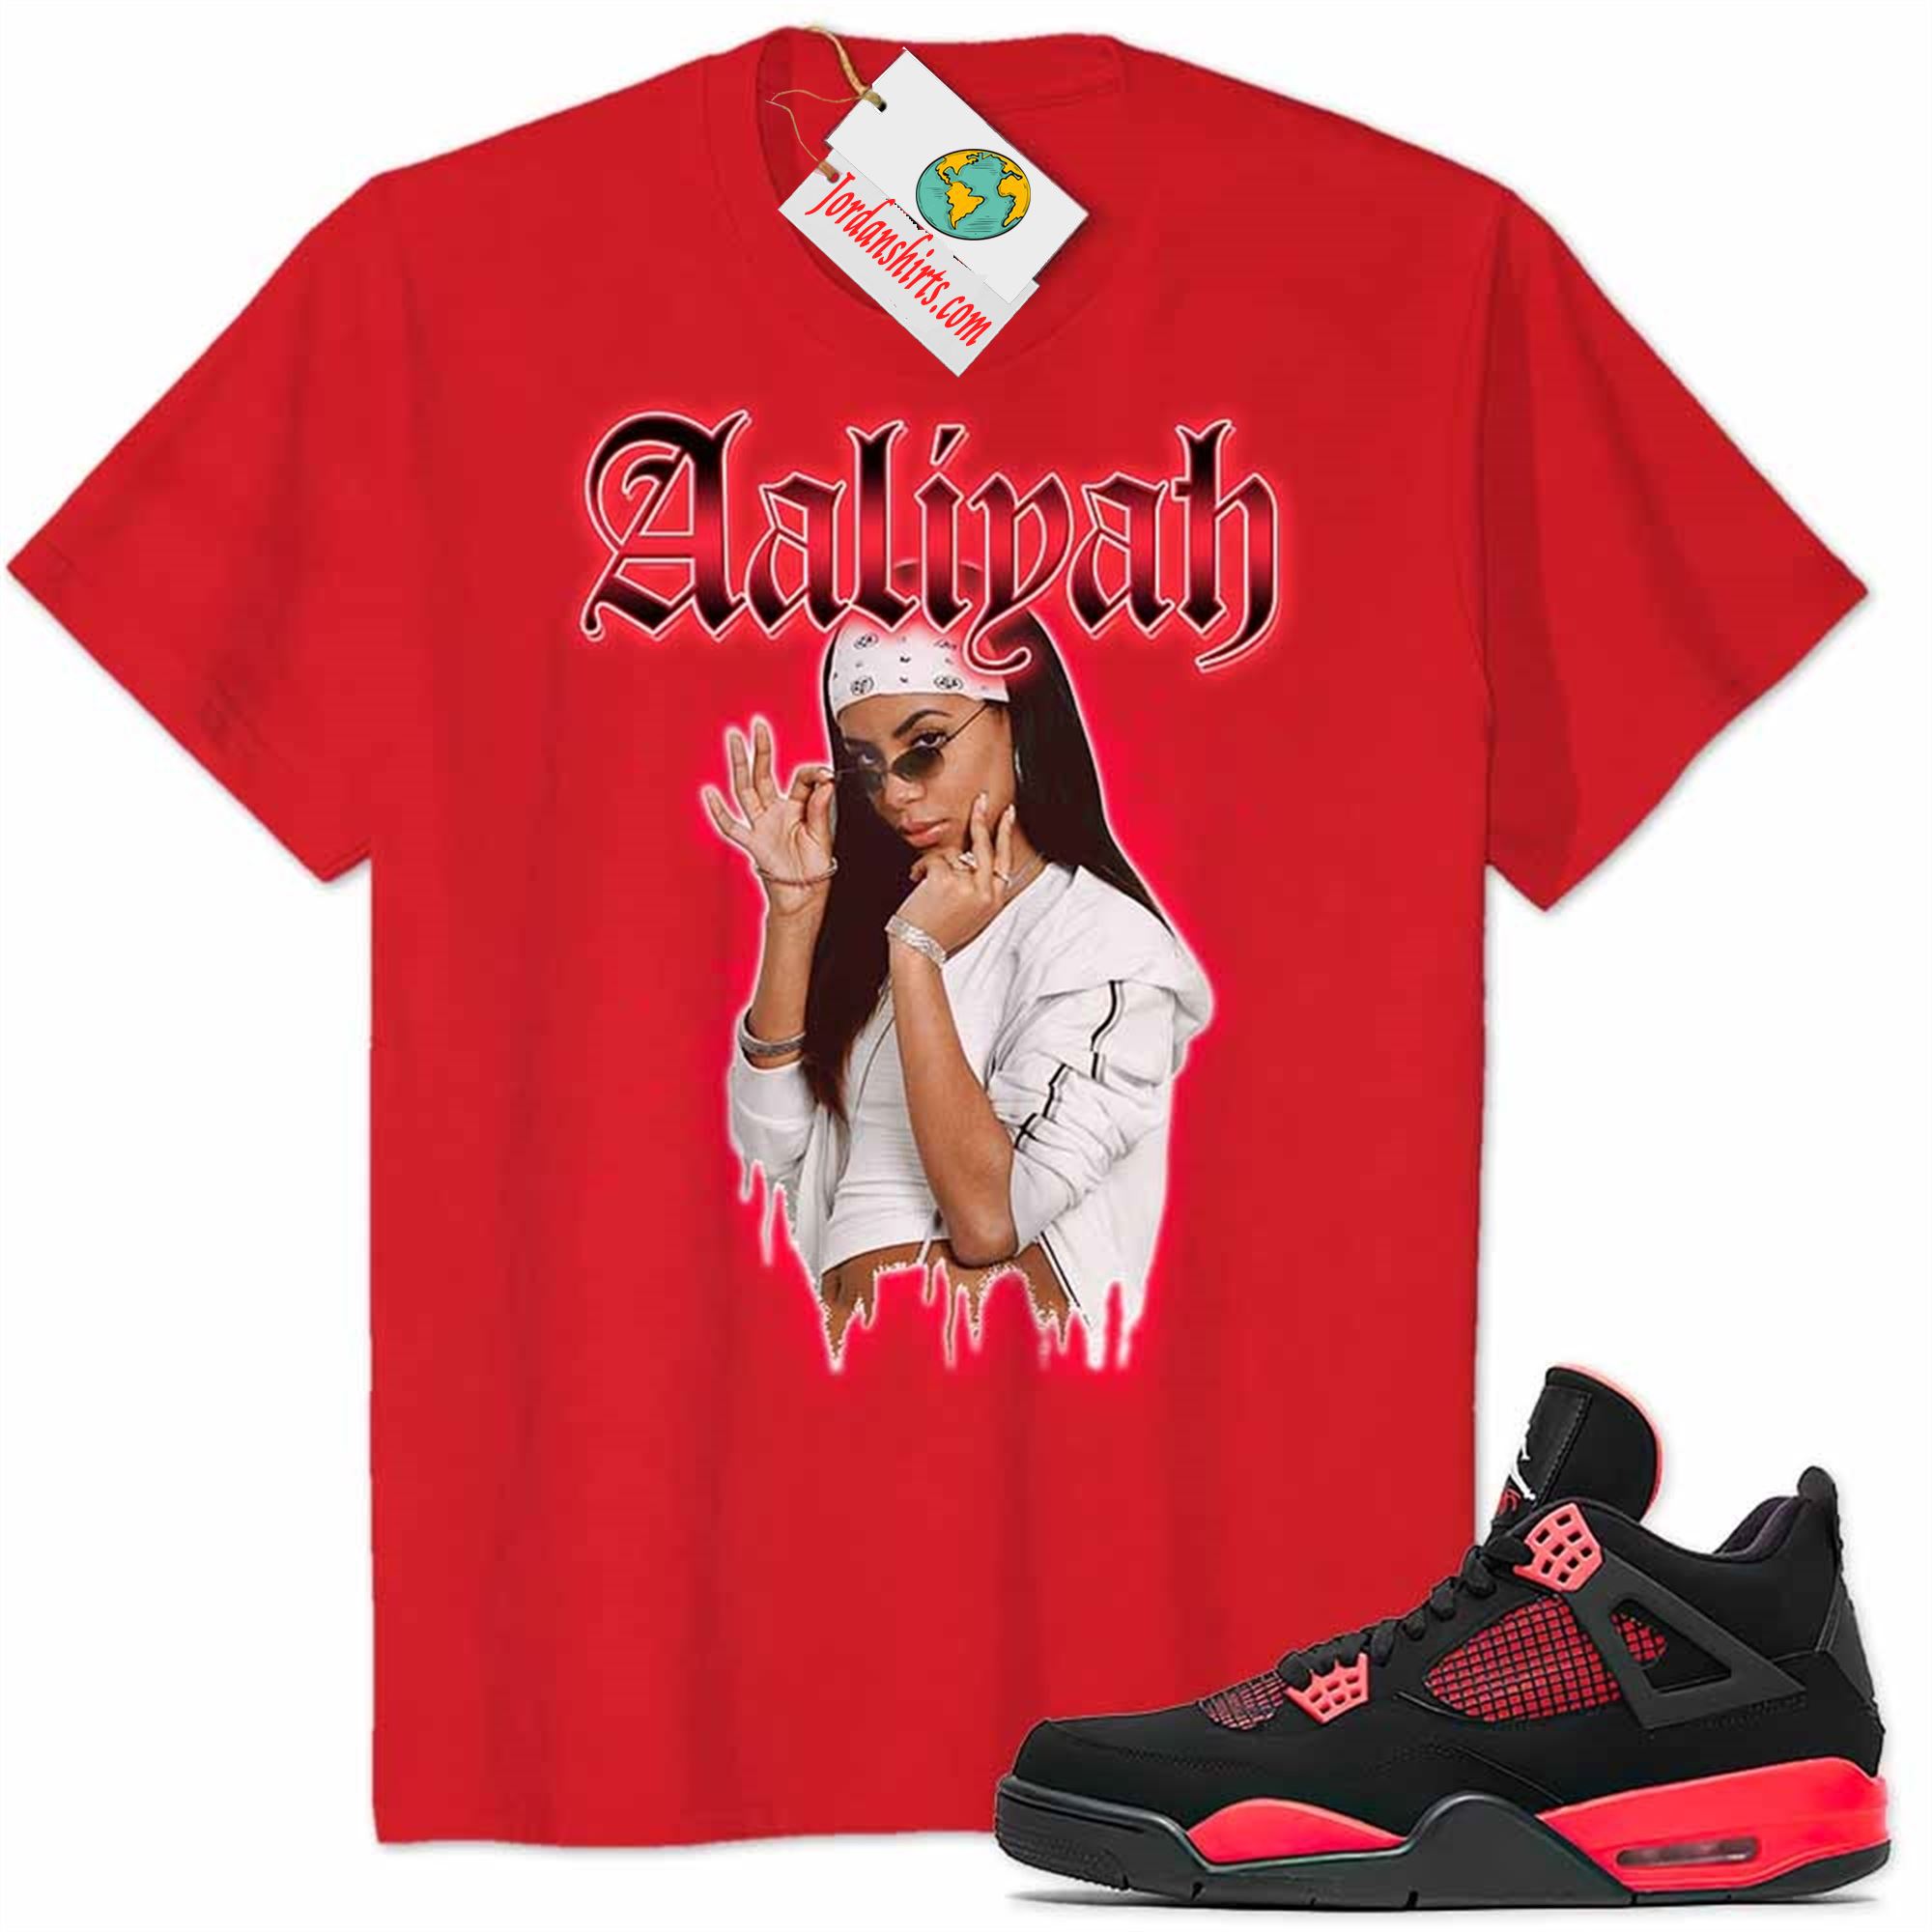 Jordan 4 Shirt, Aaliyah Graphic Red Air Jordan 4 Red Thunder 4s Plus Size Up To 5xl